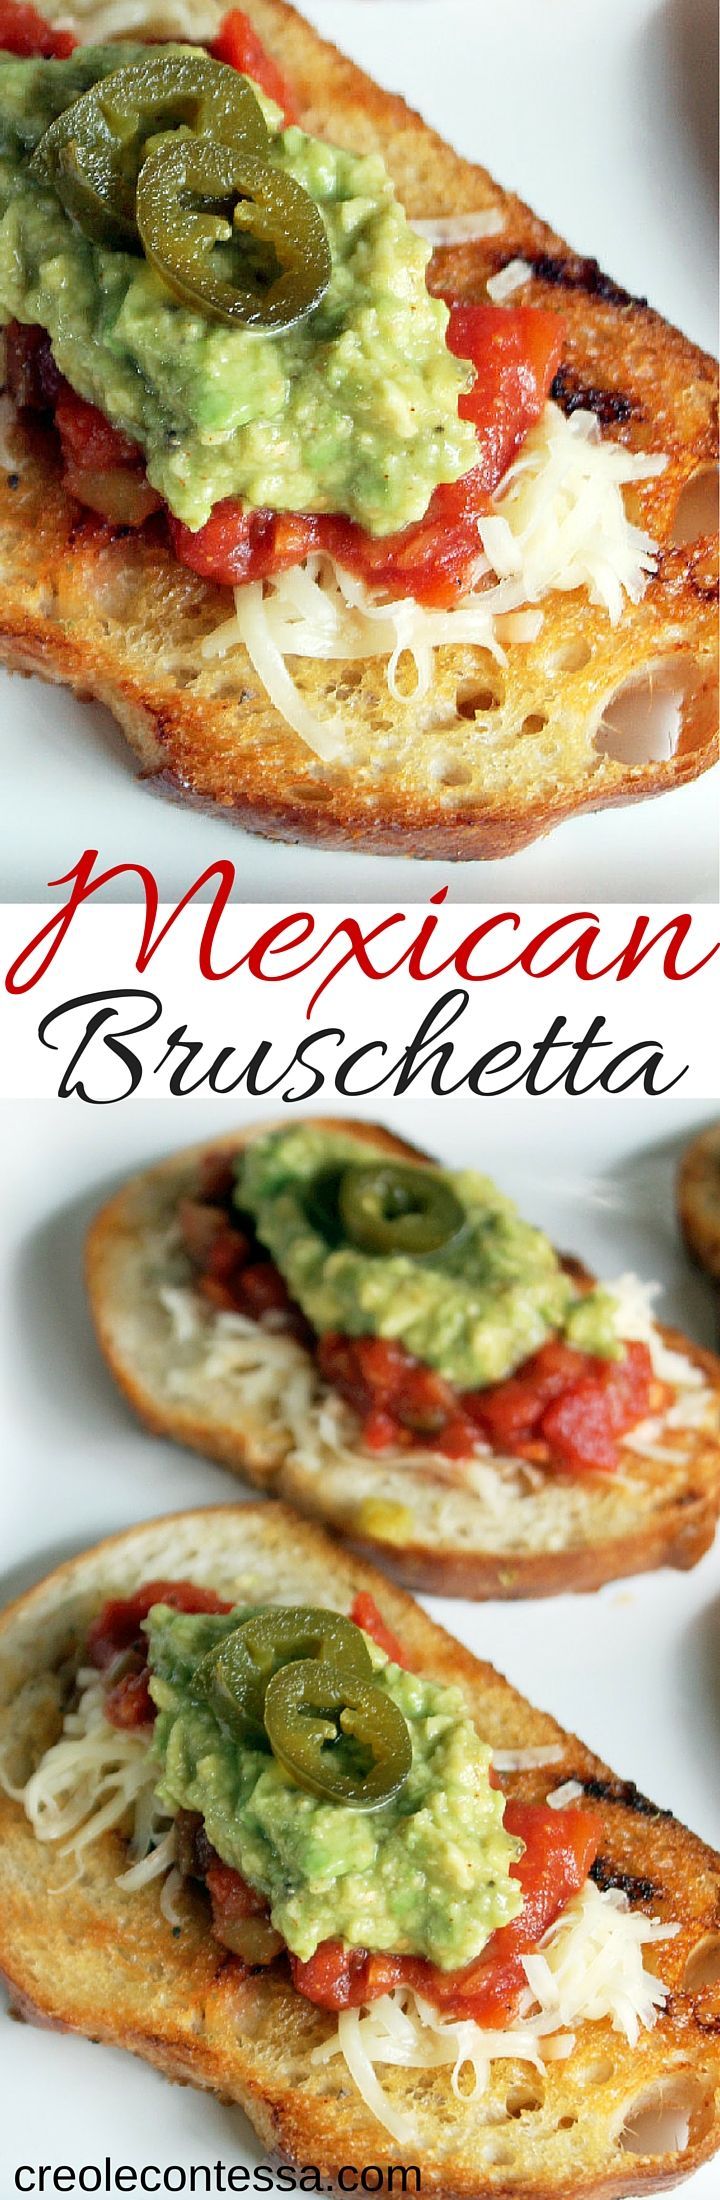 Mexican Bruschetta-Creole Contessa